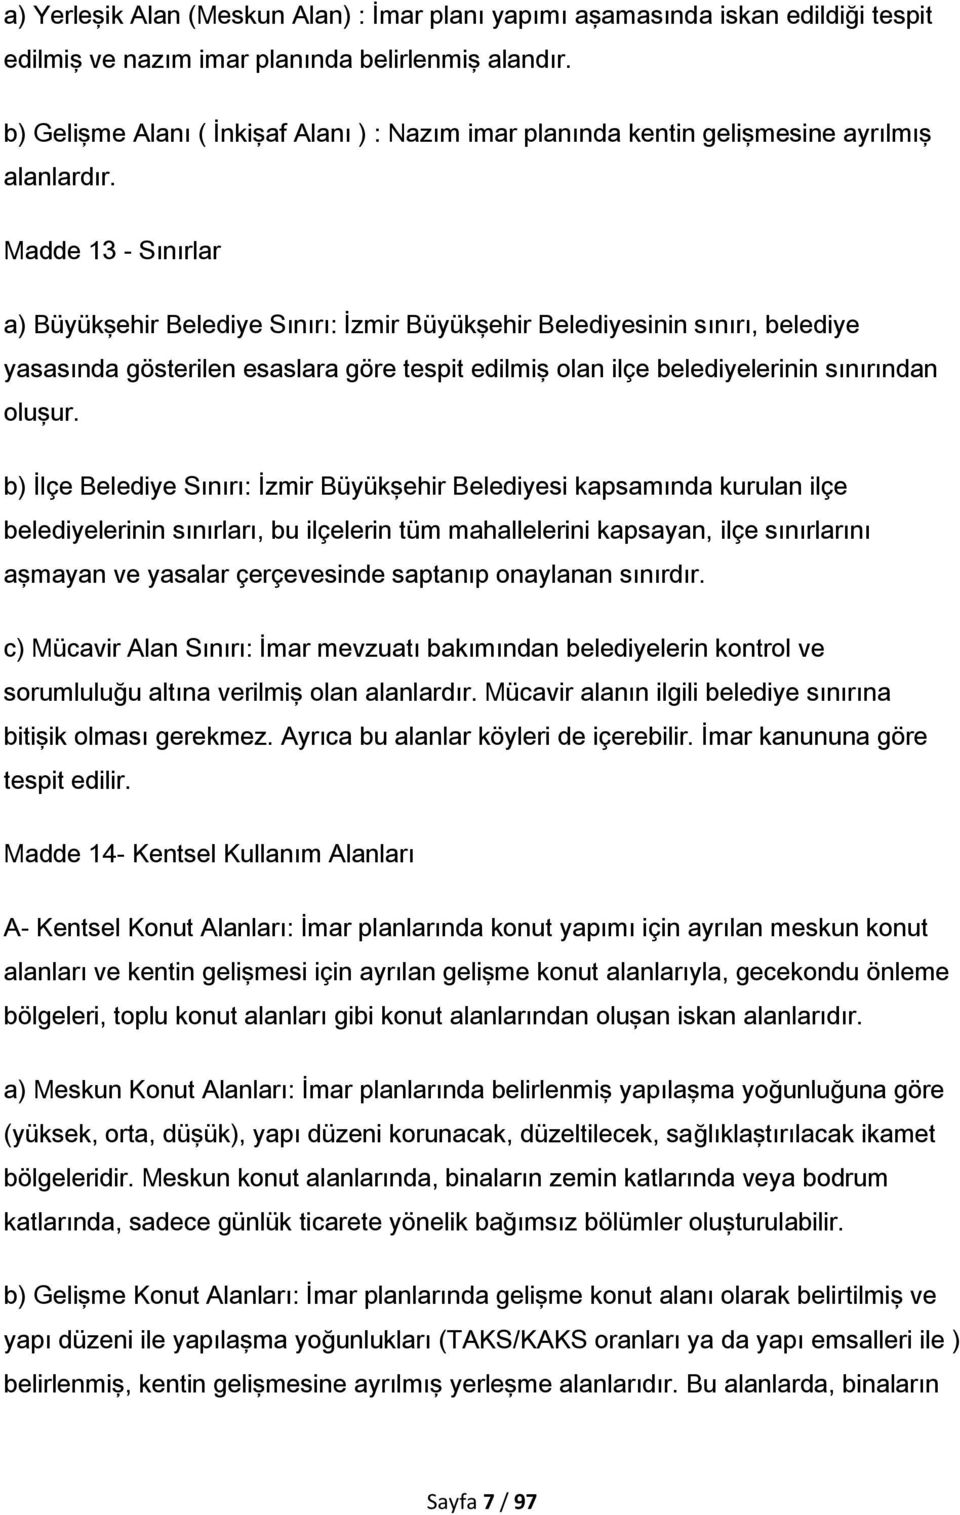 Madde 13 - Sınırlar a) Büyükşehir Belediye Sınırı: İzmir Büyükşehir Belediyesinin sınırı, belediye yasasında gösterilen esaslara göre tespit edilmiş olan ilçe belediyelerinin sınırından oluşur.